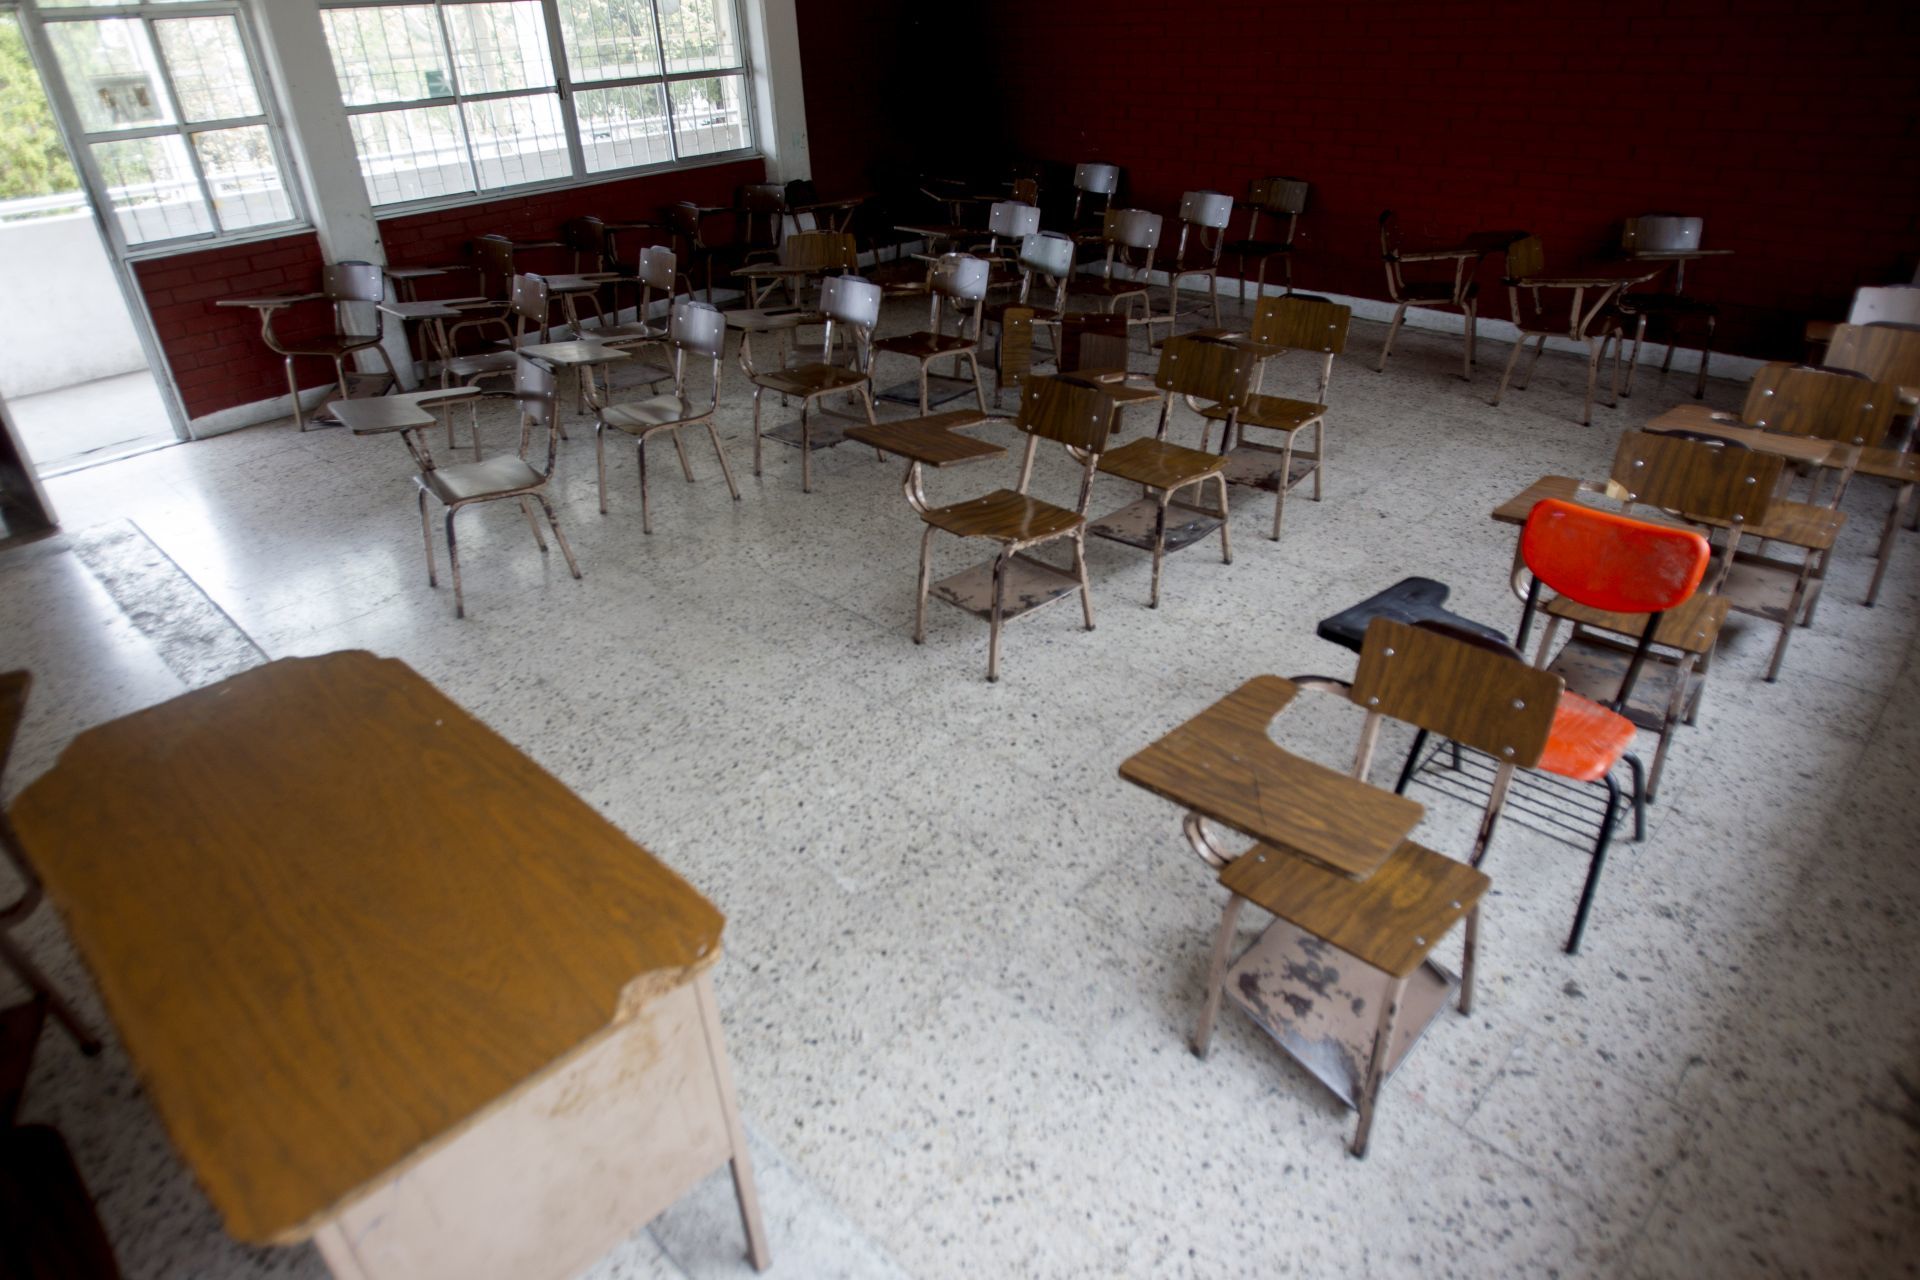 Escuelas particulares anuncian regreso a clases presenciales en marzo